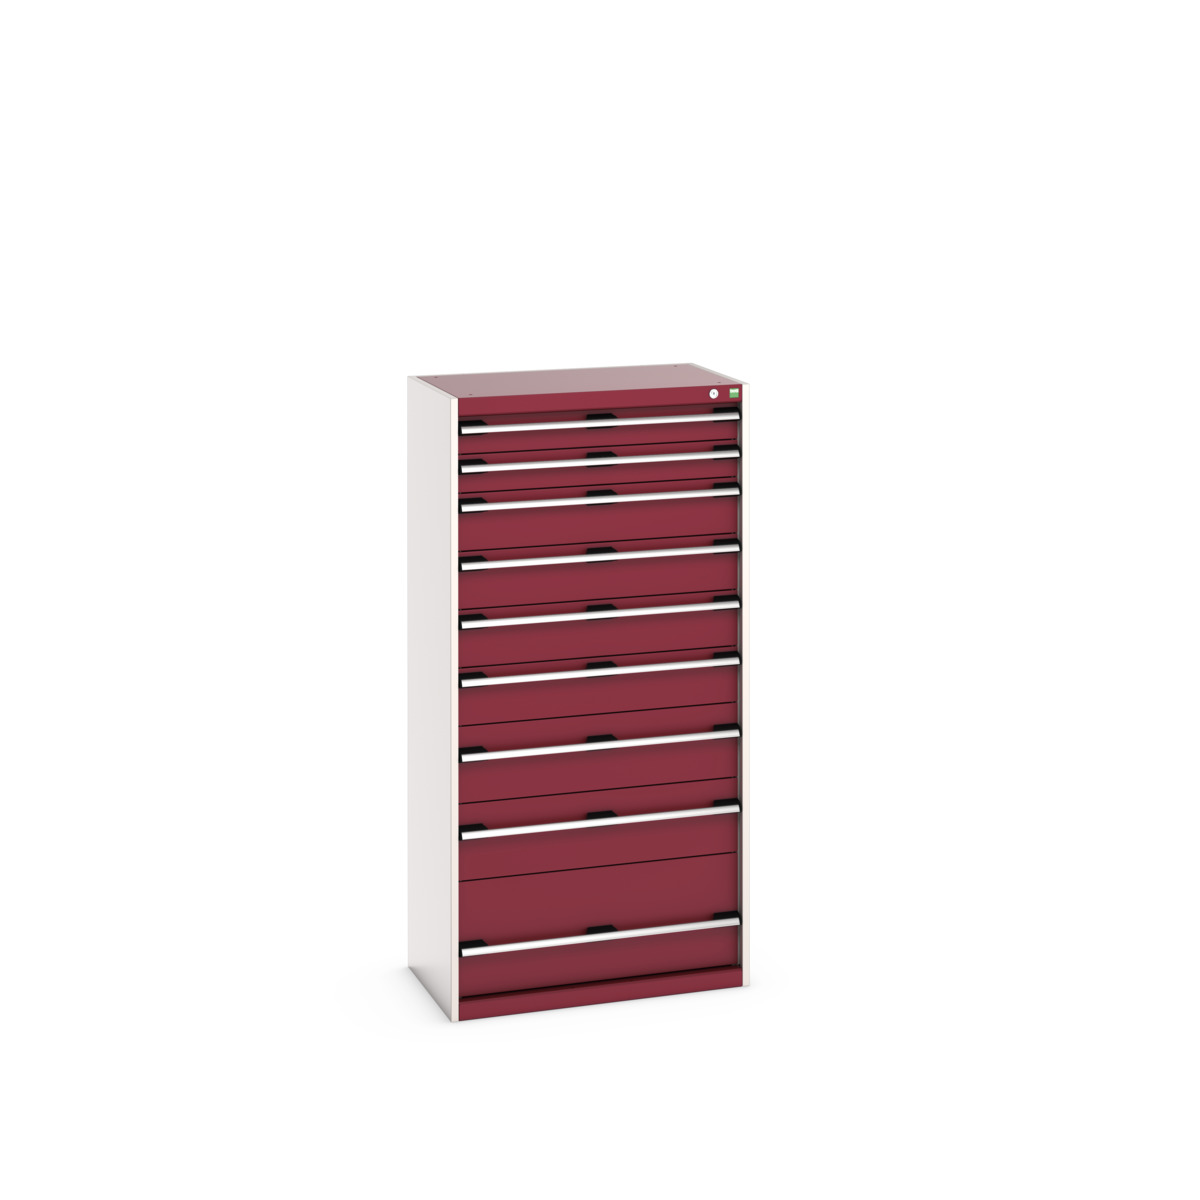 40012110.24V - cubio drawer cabinet